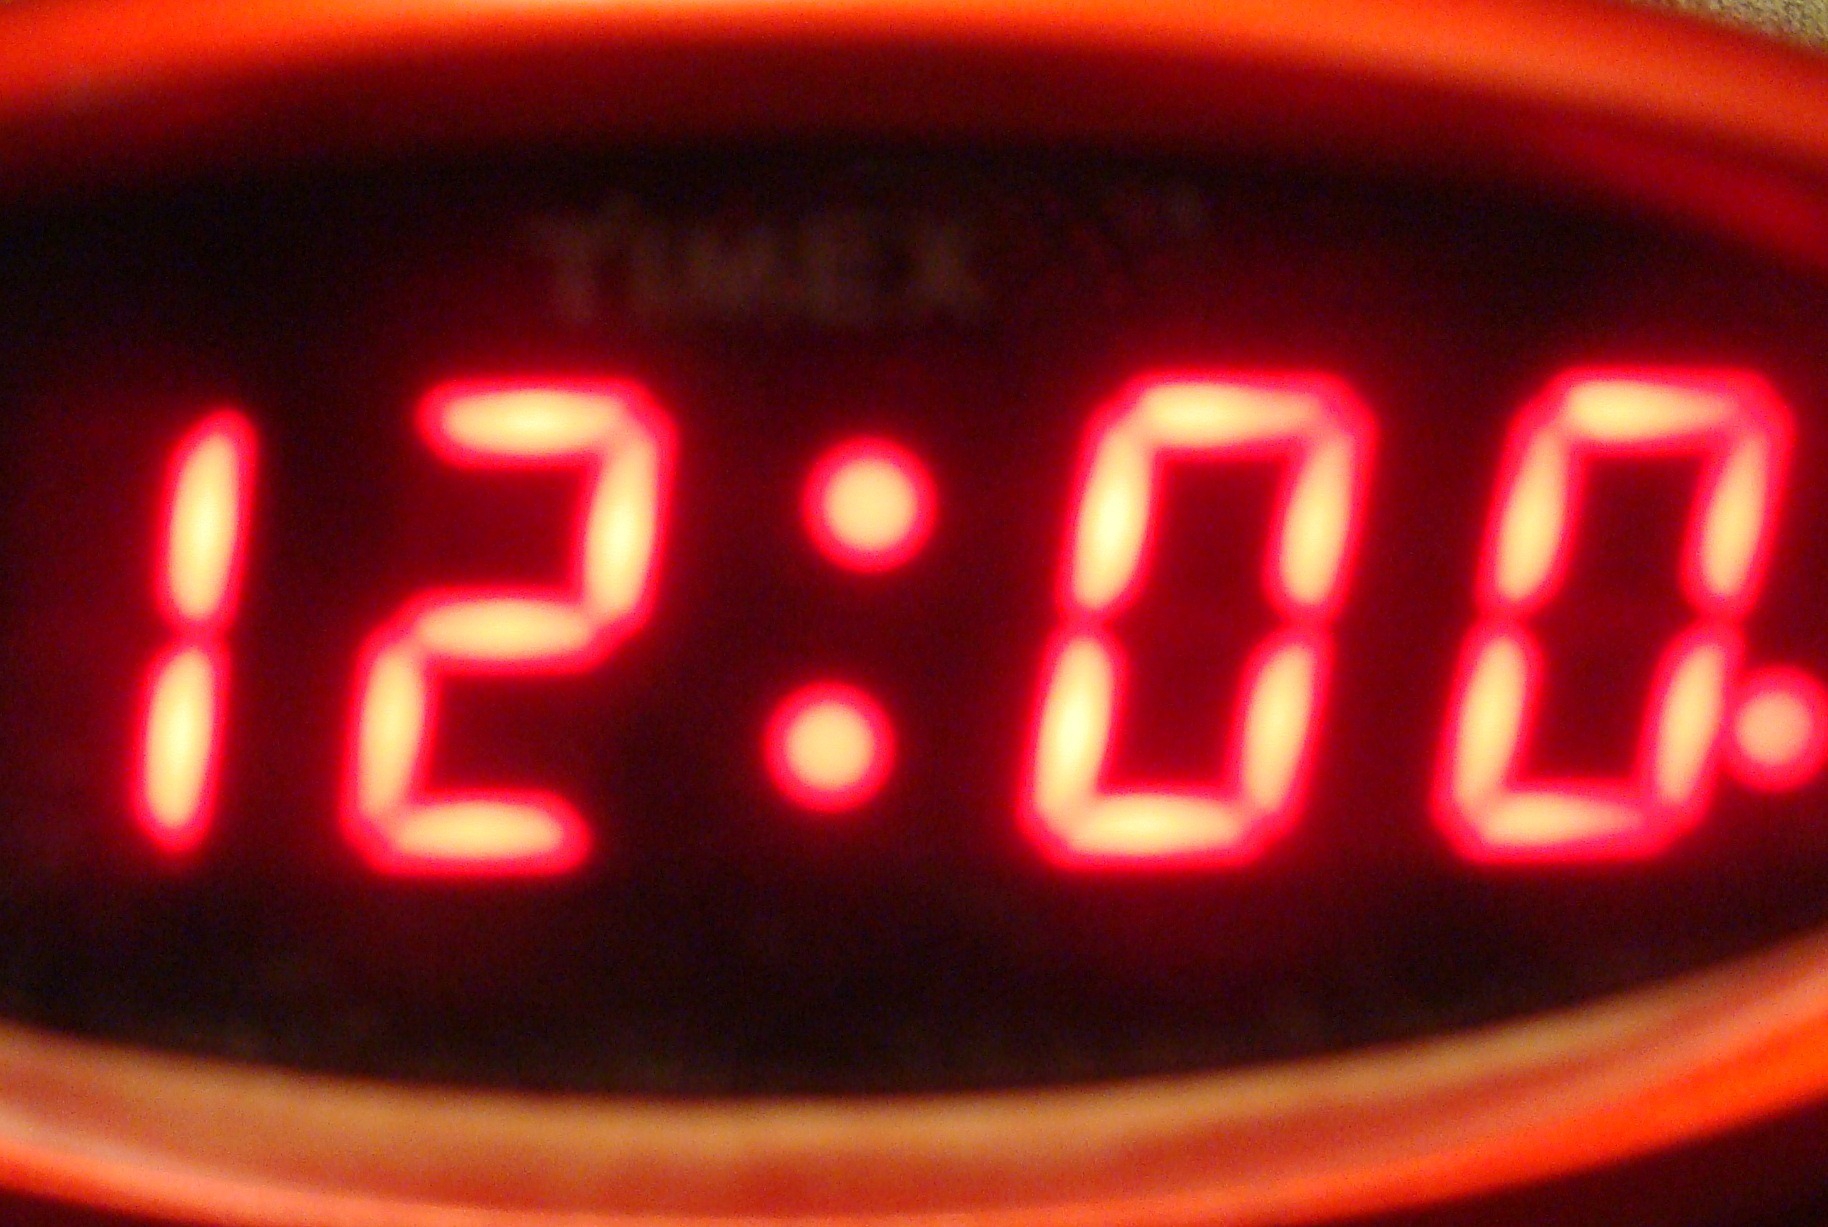 1 24 ночи. Электронные часы 12 00. Часы показывают 12 00. Электронные часы полночь. Электронные часы 12 часов ночи.